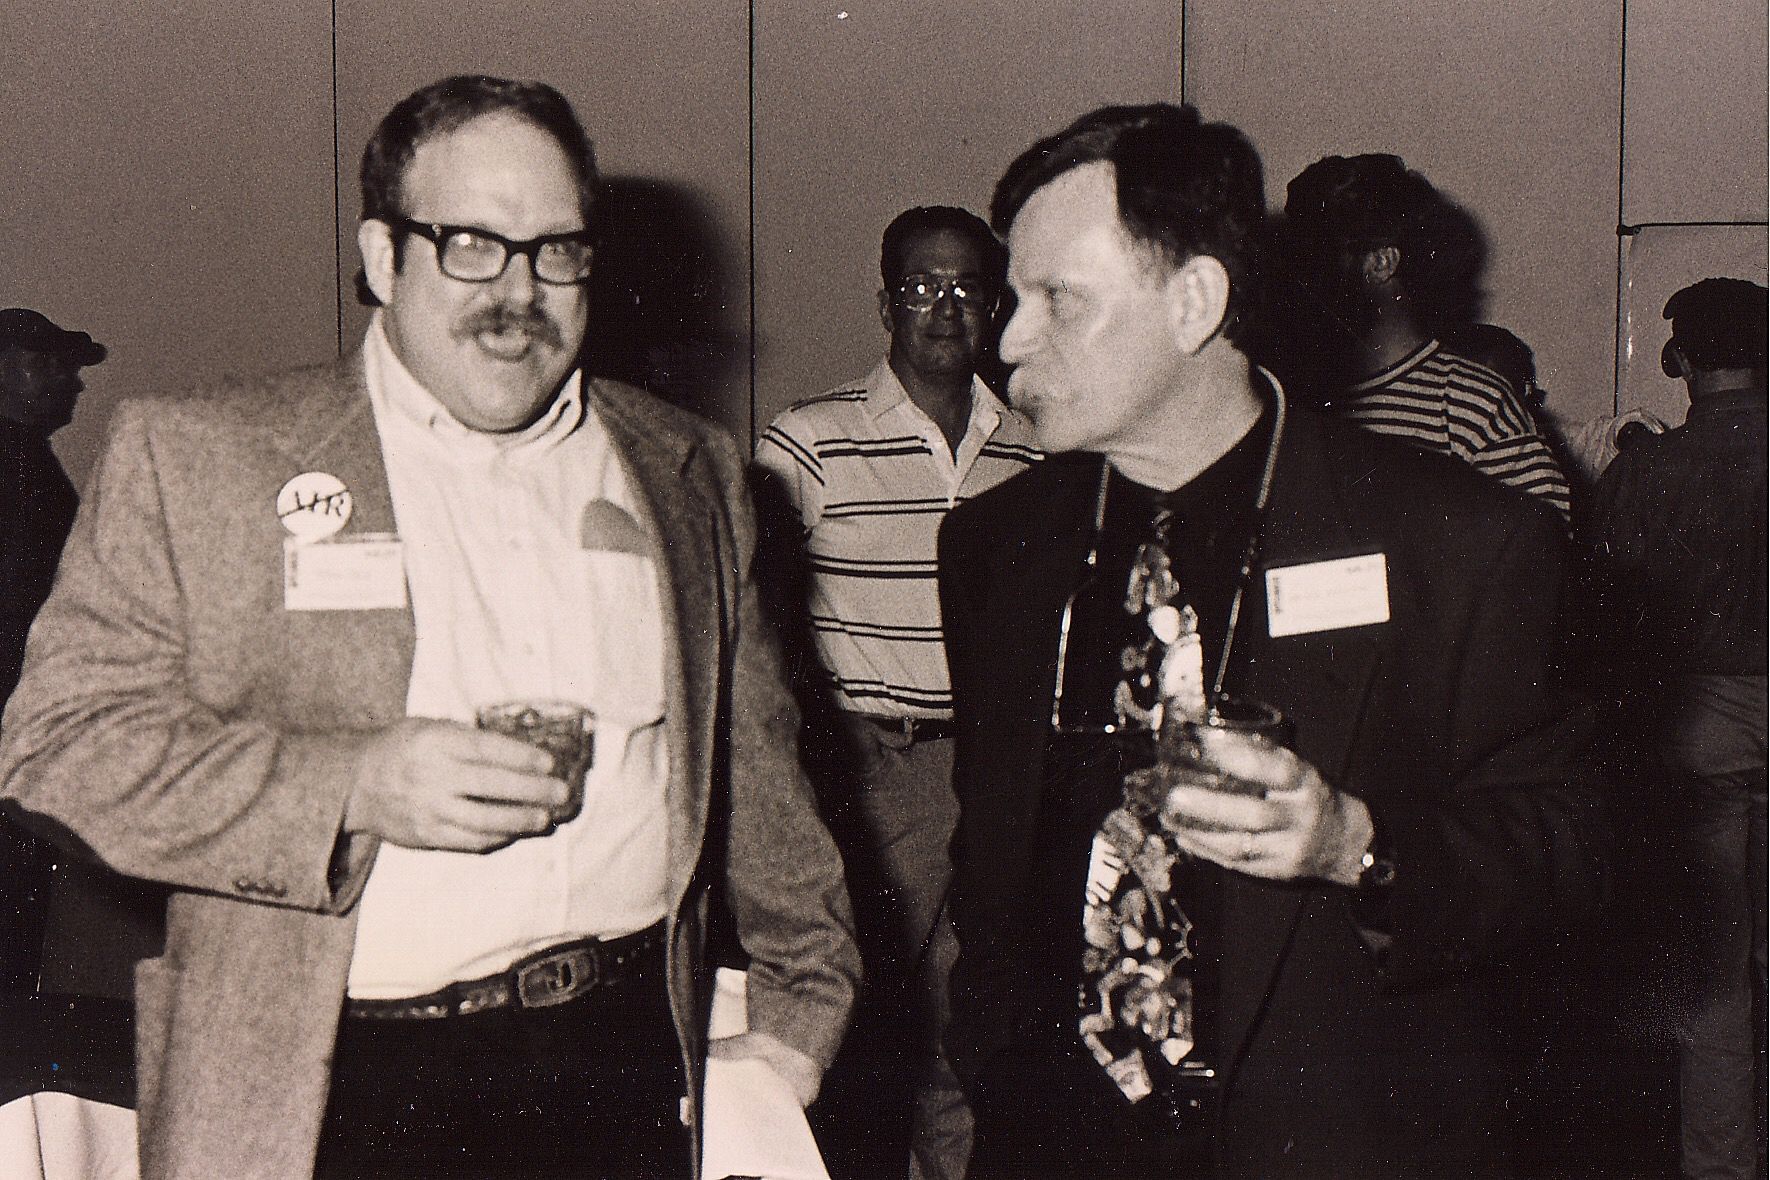 John Crea and Dr. RW Bill Hamilton